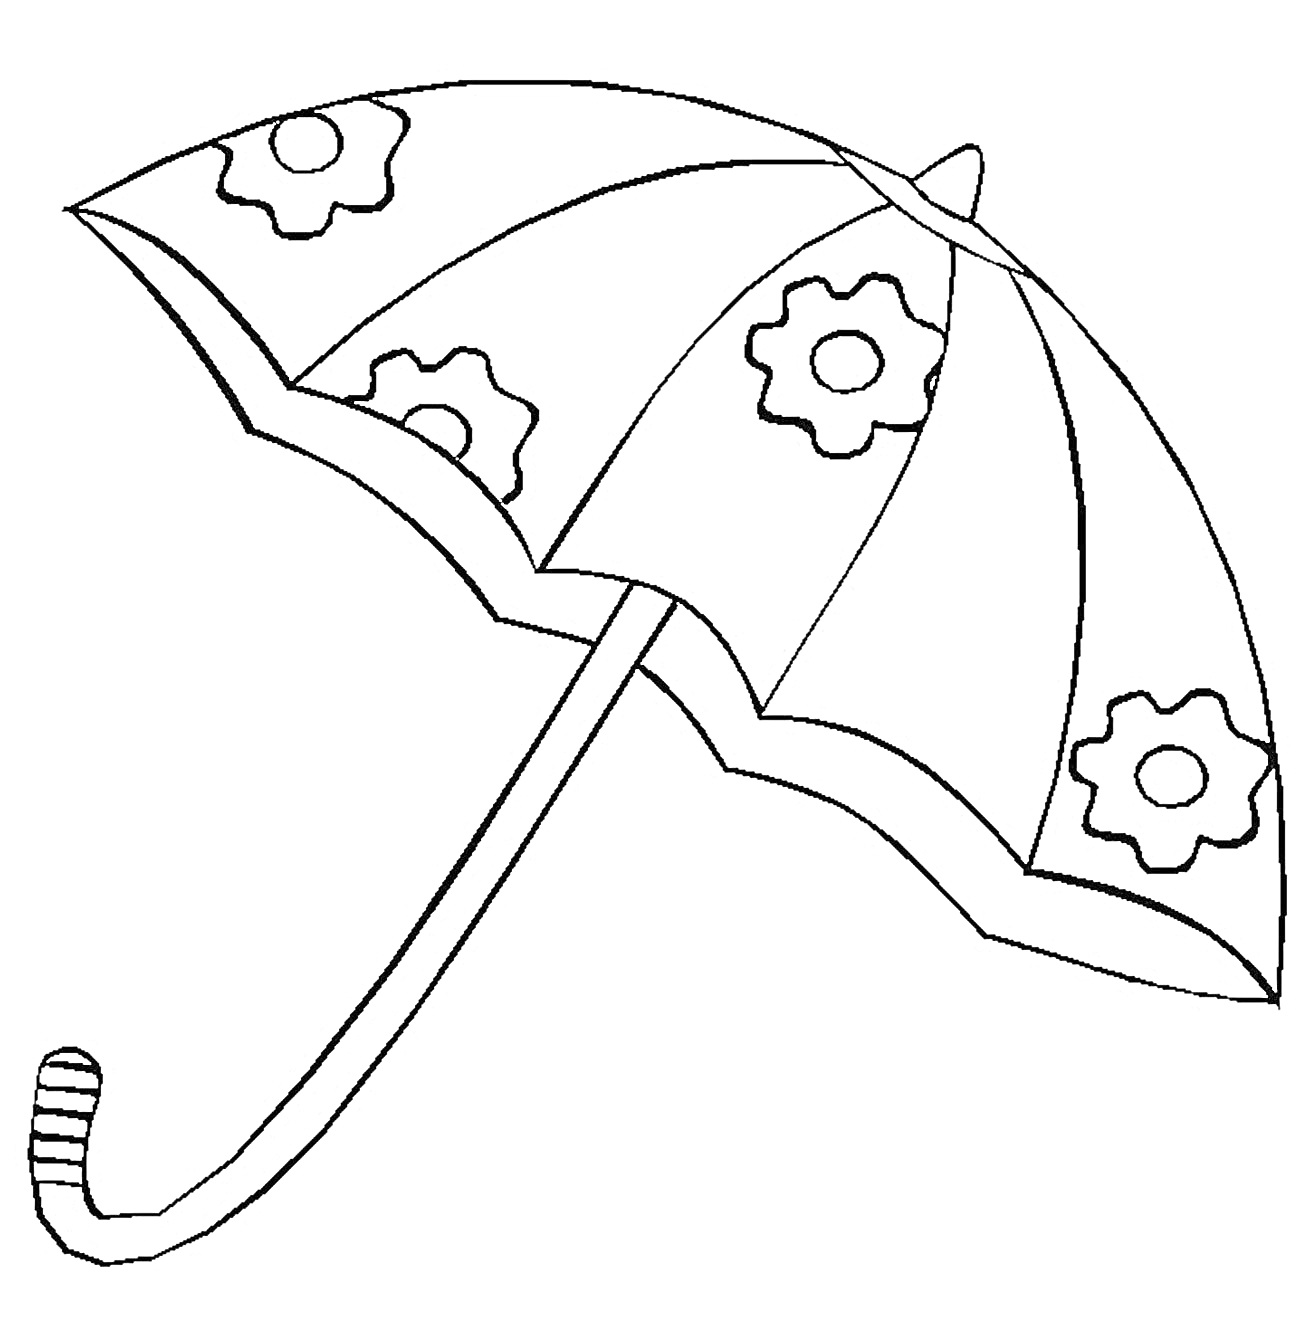 Зонтик с узорами в виде цветочных шестеренок